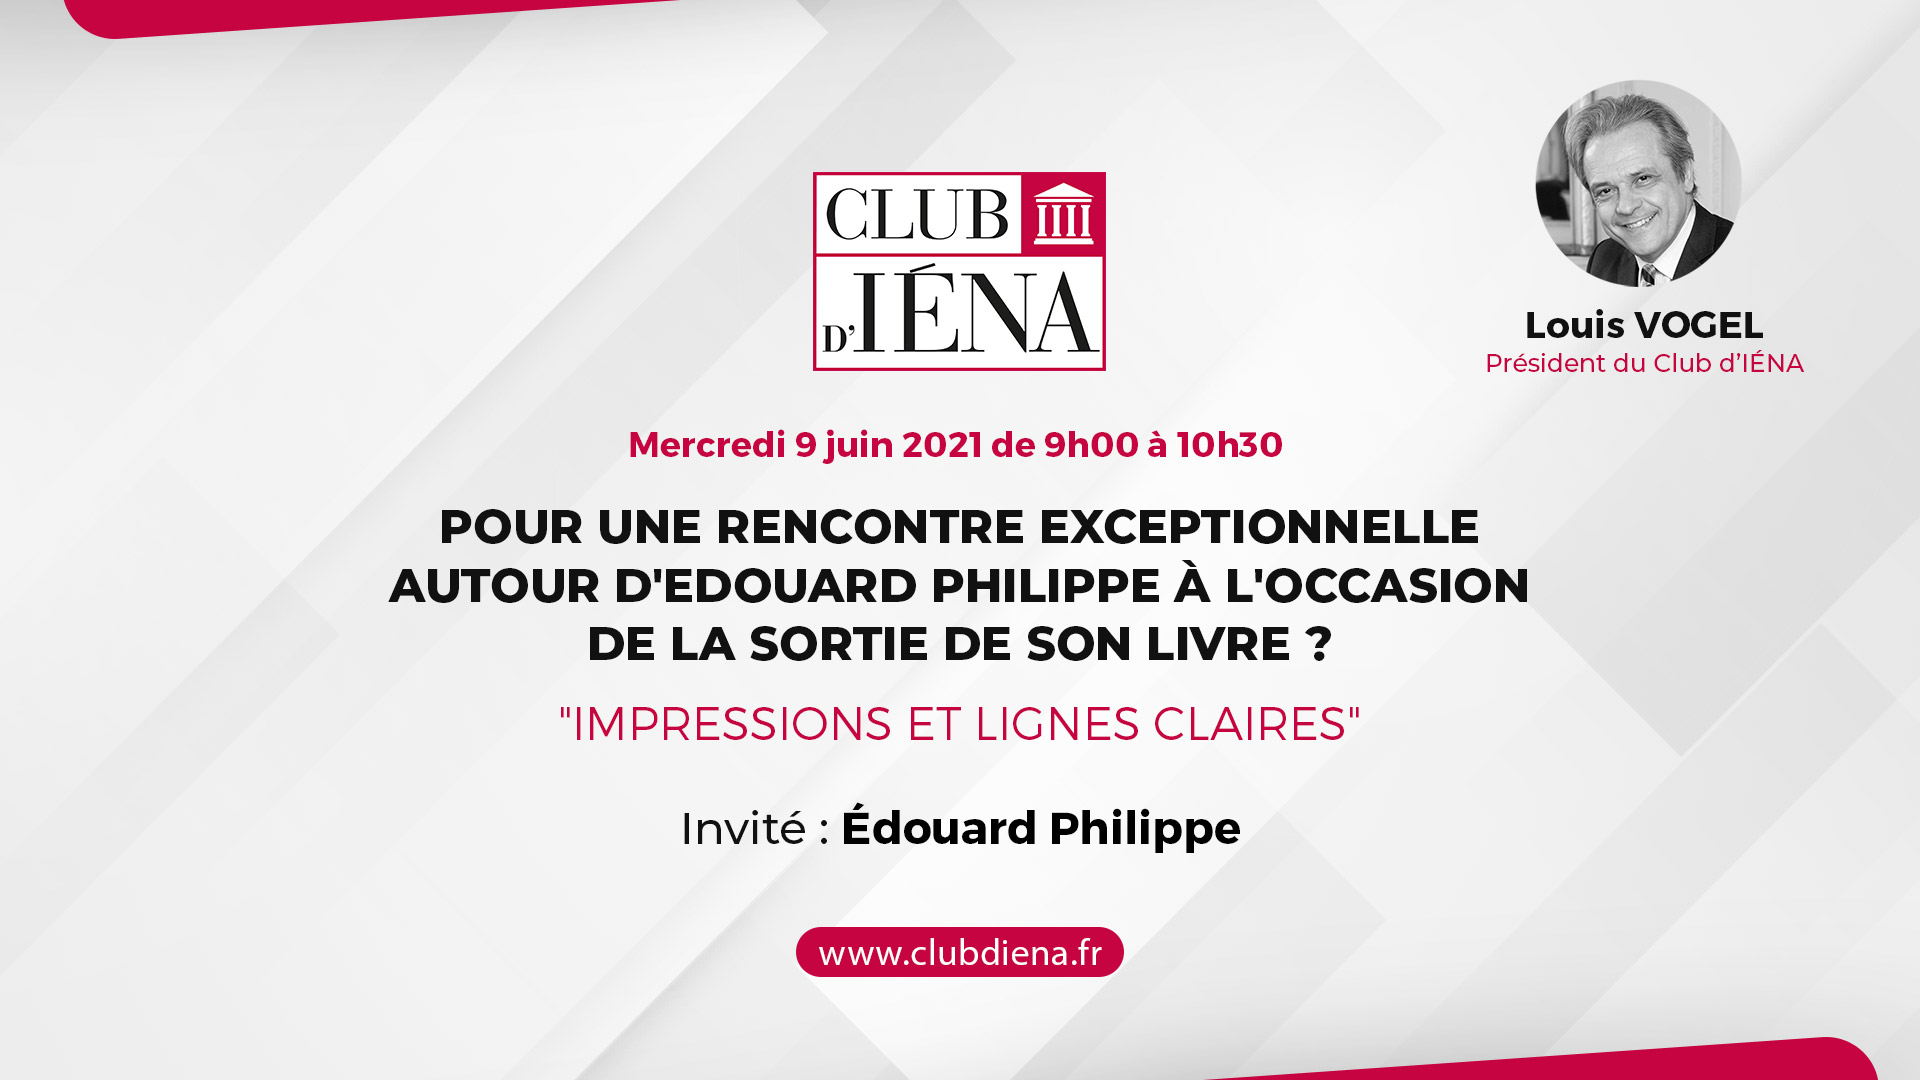 Club D'Iéna • Rencontre exceptionnelle avec Edouard ¨Philippe • Impressions et lignes claires